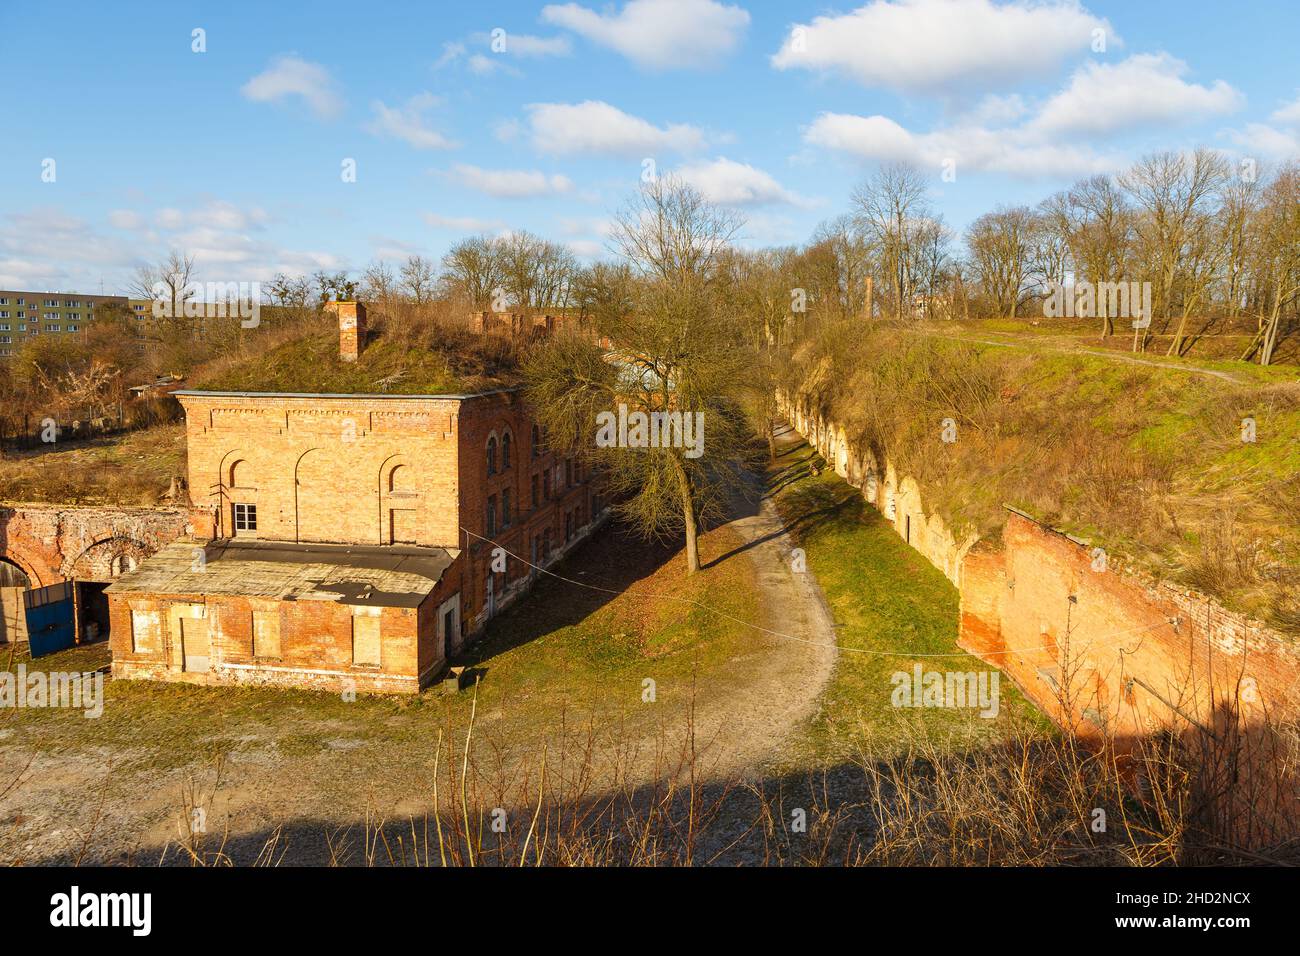 Nowy Dwor Mazowiecki, Polen - 05. Februar 2018: Die Festung Modlin, eine der größten Festungen aus dem 19th. Jahrhundert in Polen. Sonniger Wintertag. Stockfoto